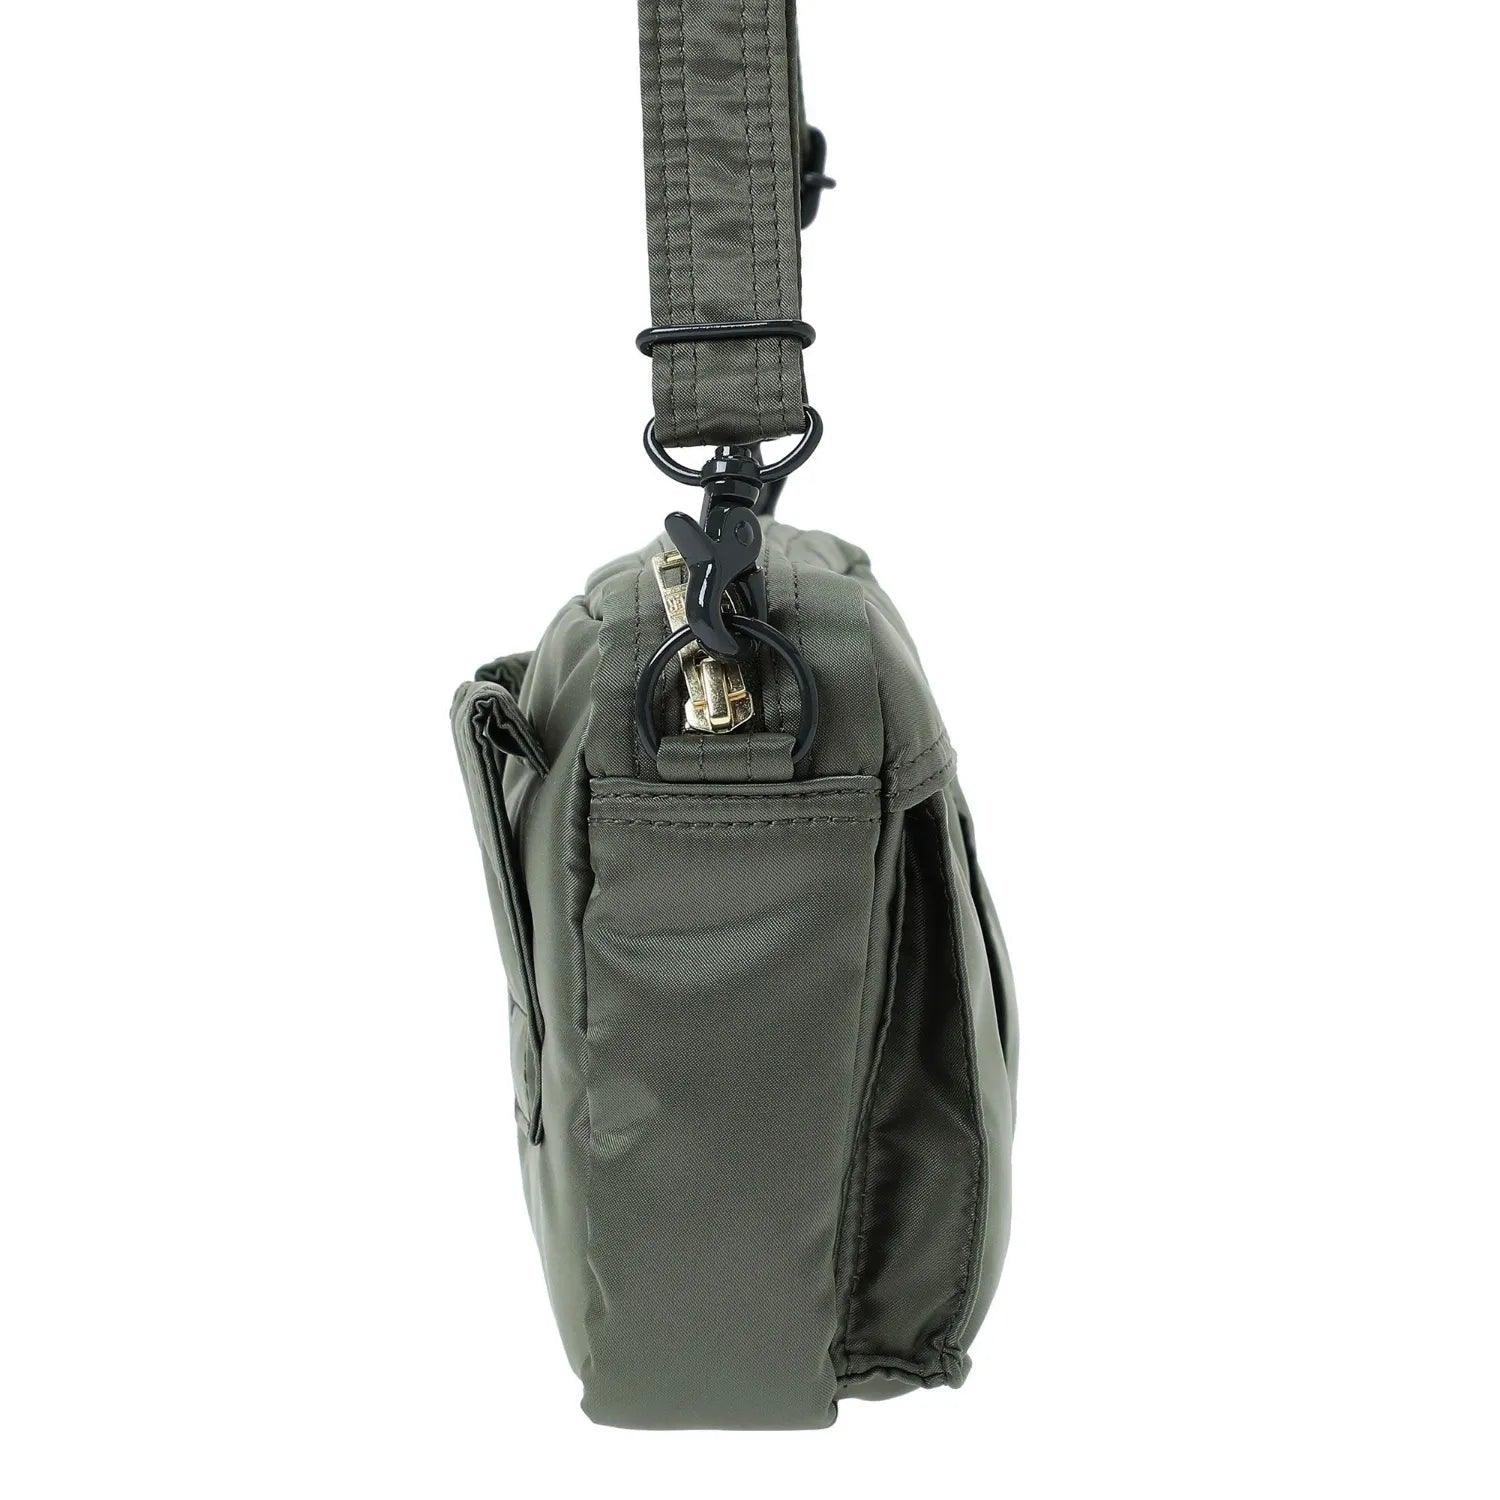 Porter-Yoshida & Co Tanker Shoulder Bag - Sage Green - One